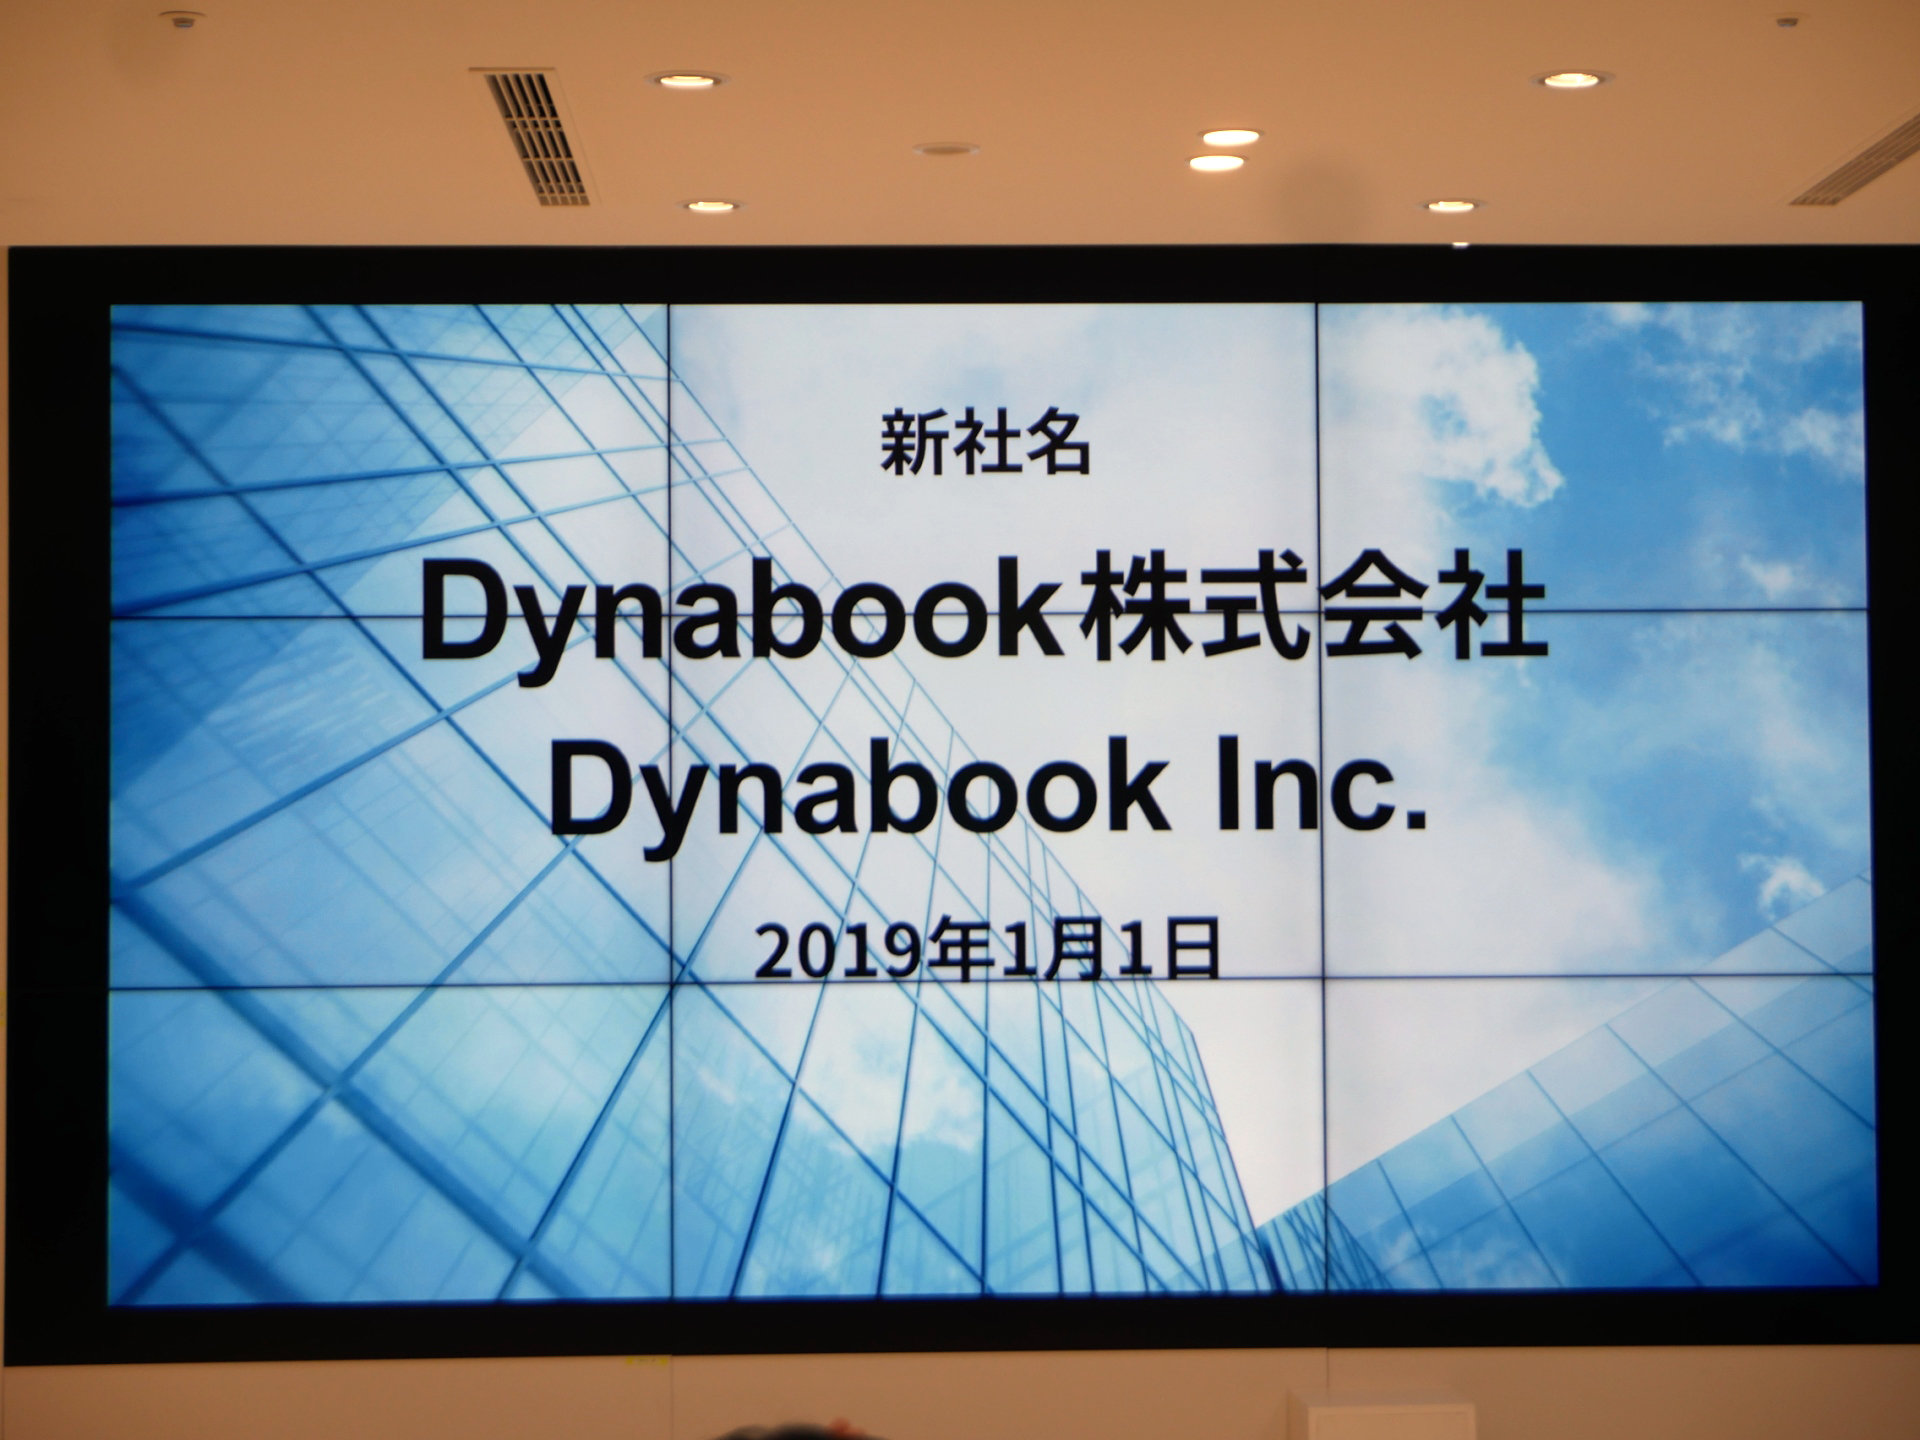 東芝クライアントソリューションが Dynabook株式会社 に社名変更 Pc Watch